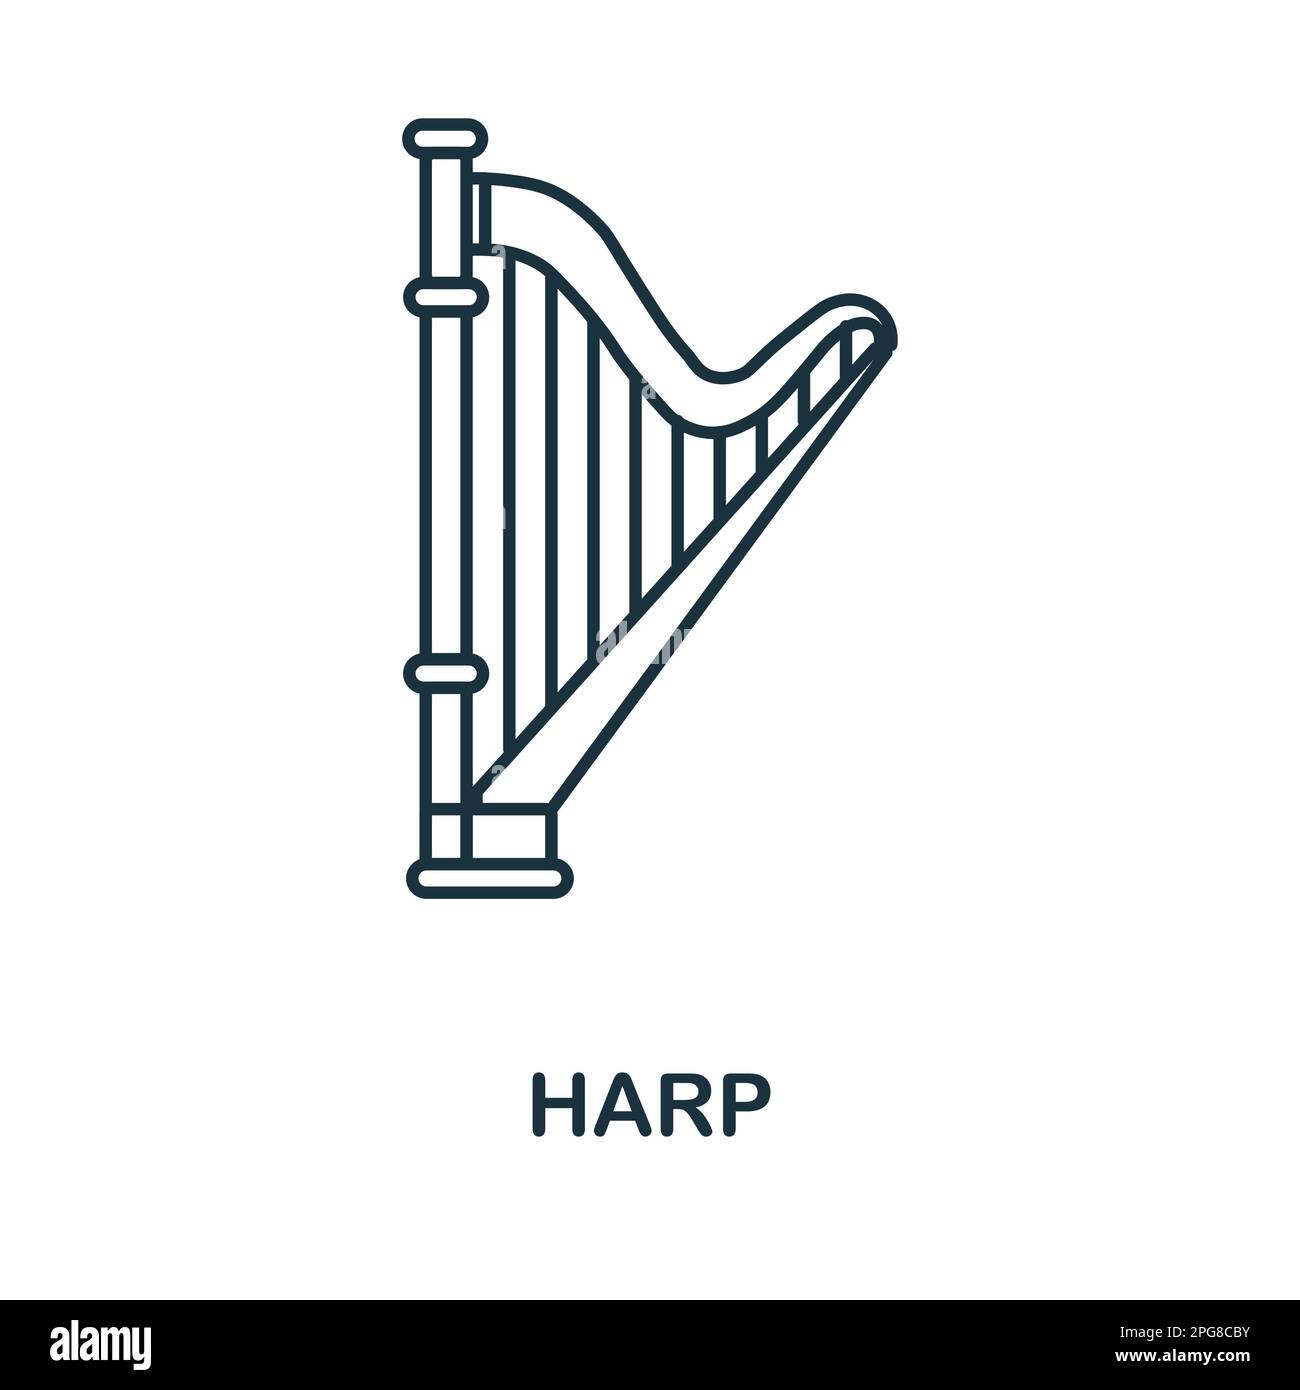 Icône de ligne de harpe. Élément simple de la collection d'instruments de musique. Icône de contour de Creative Harp pour la conception Web, les modèles, les infographies et plus encore Illustration de Vecteur